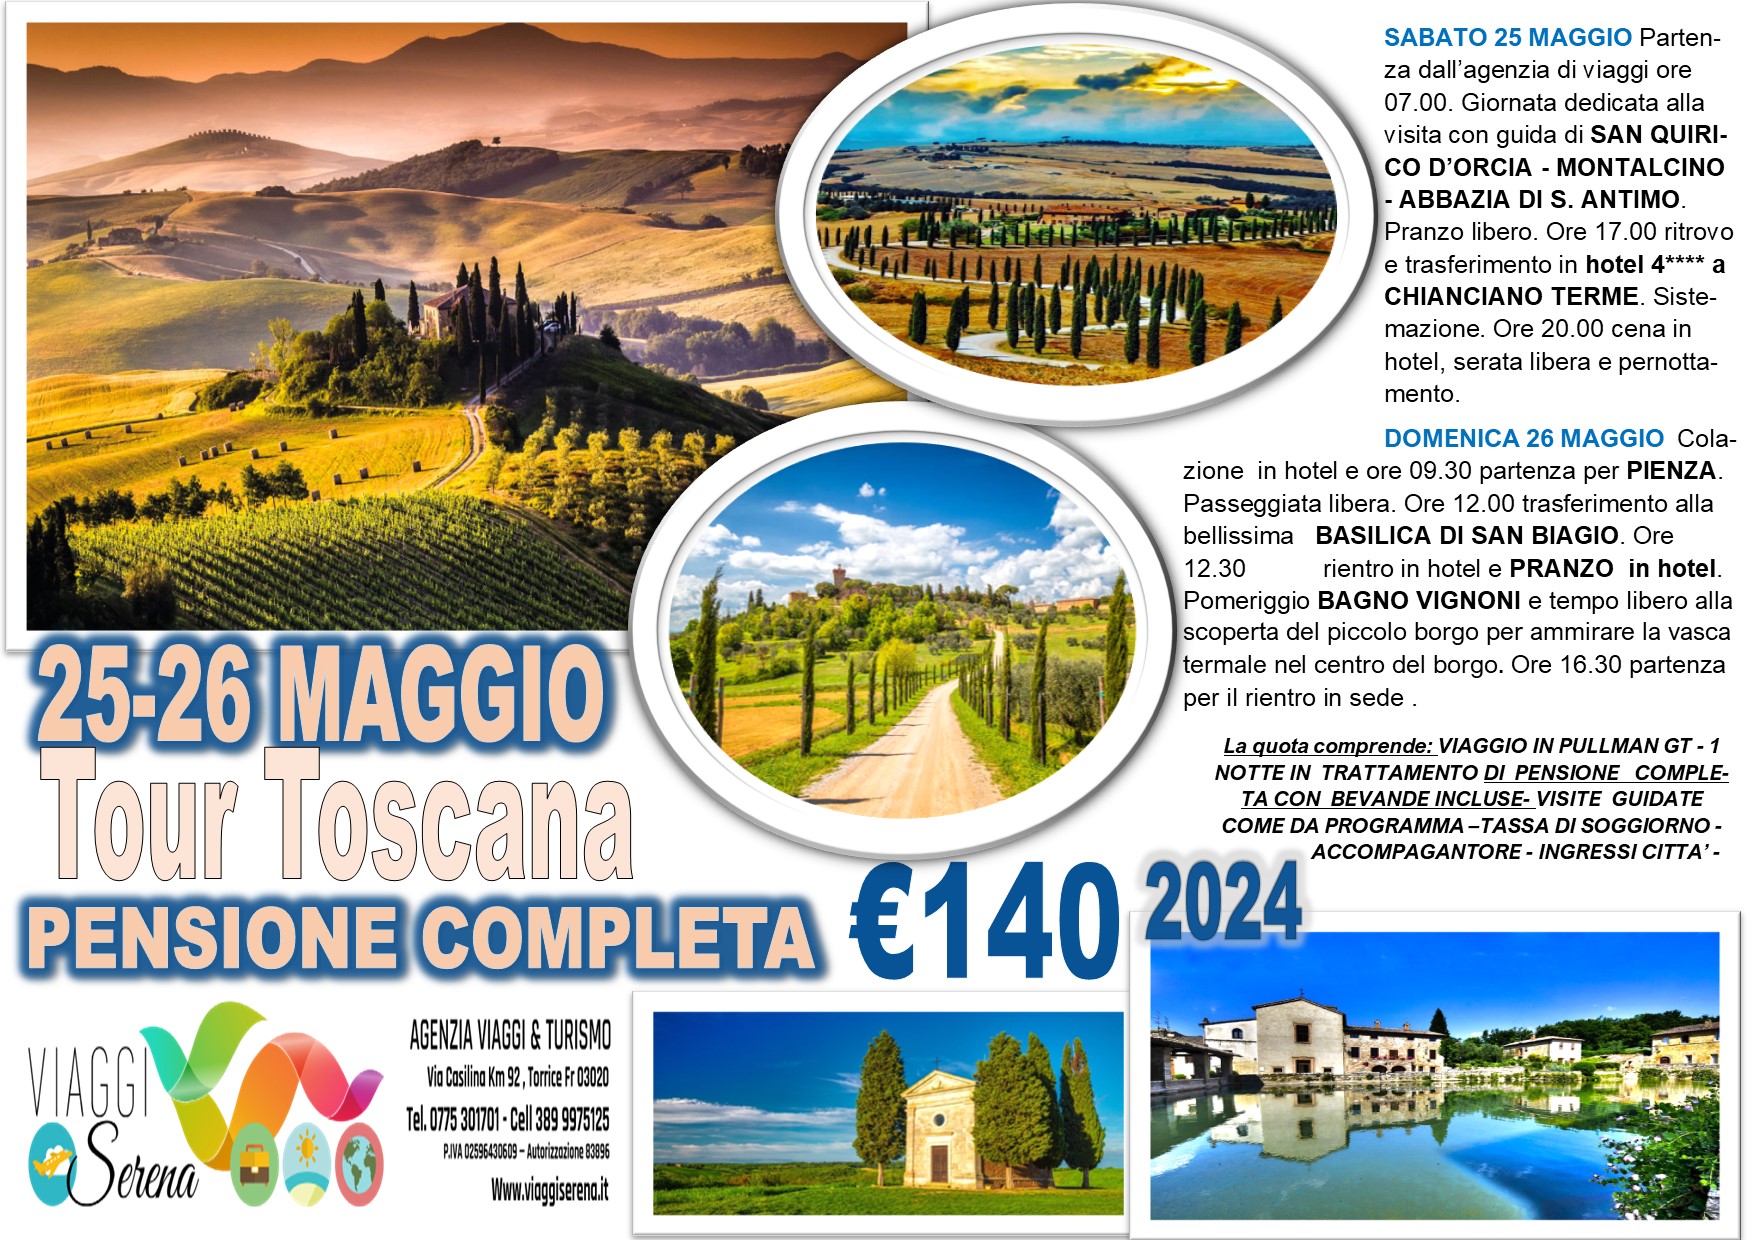 Viaggi di gruppo: Tour Toscana , Montalcino, Pienza, Bagno Vignone & Sant’Antimo 25-26 Maggio € 140,00